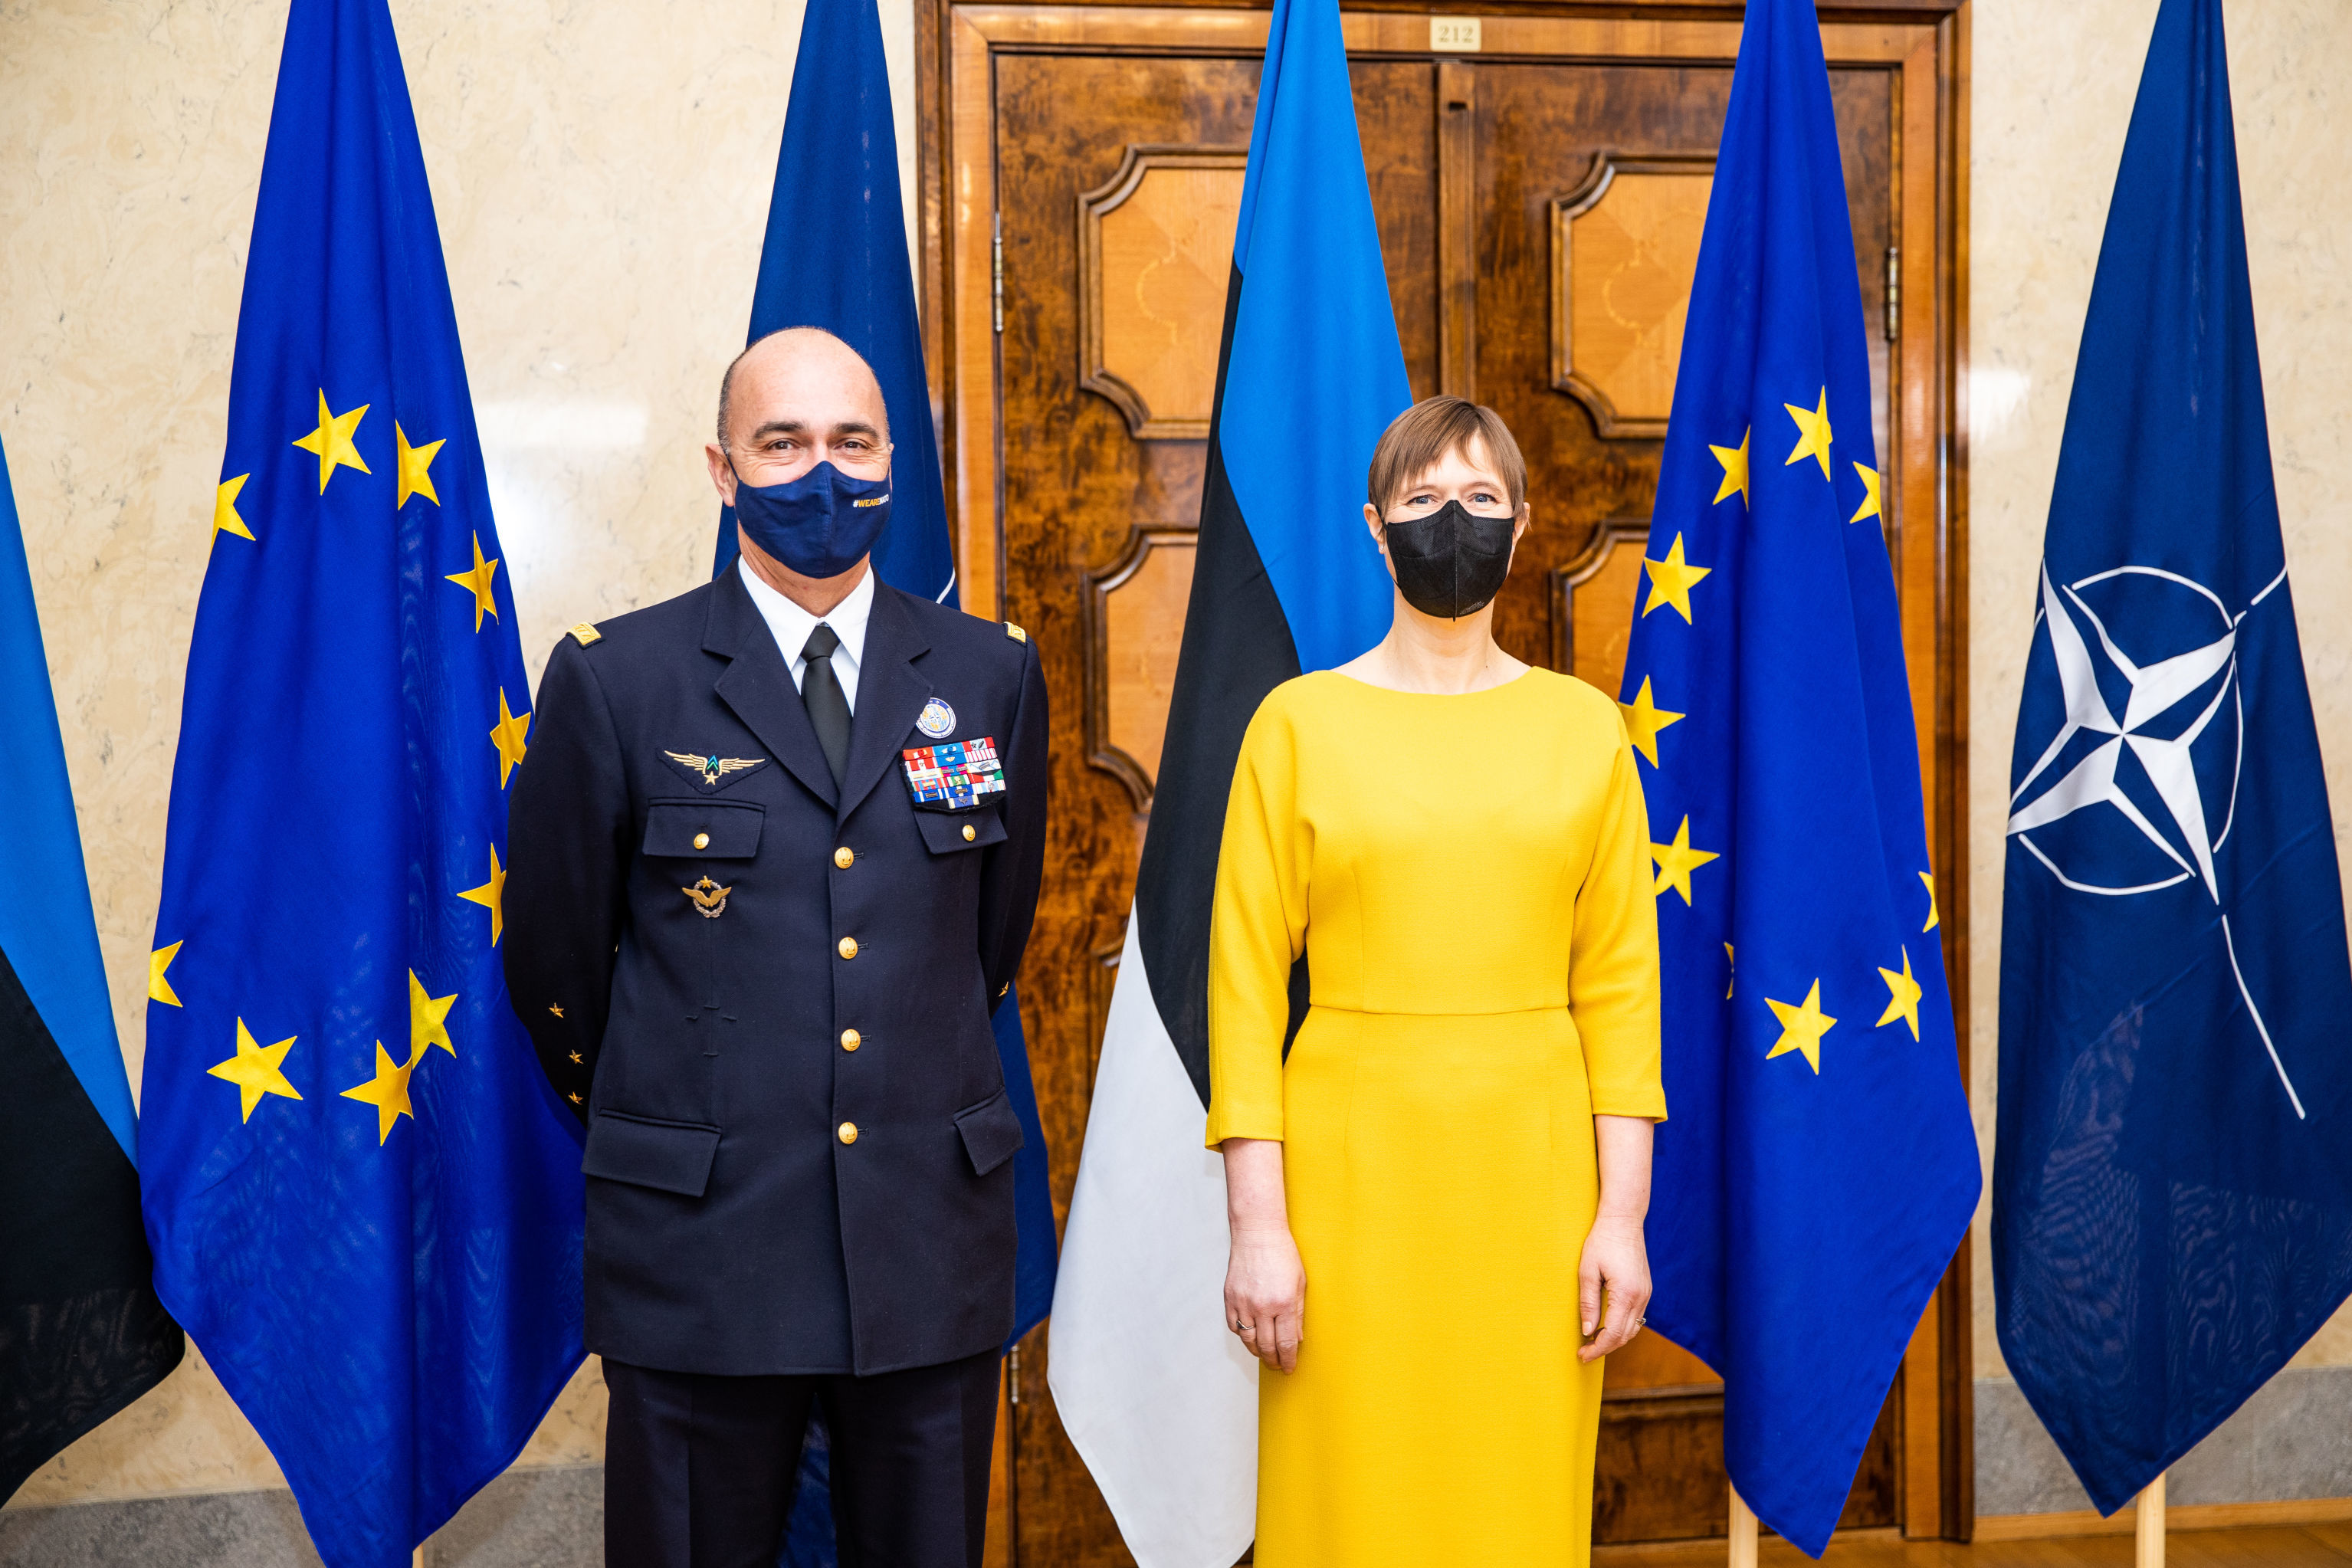 Главнокомандующий Командования НАТО по трансформации генерал Андре Ланата на встрече с президентом Керсти Кальюлайд, 12 февраля 2021